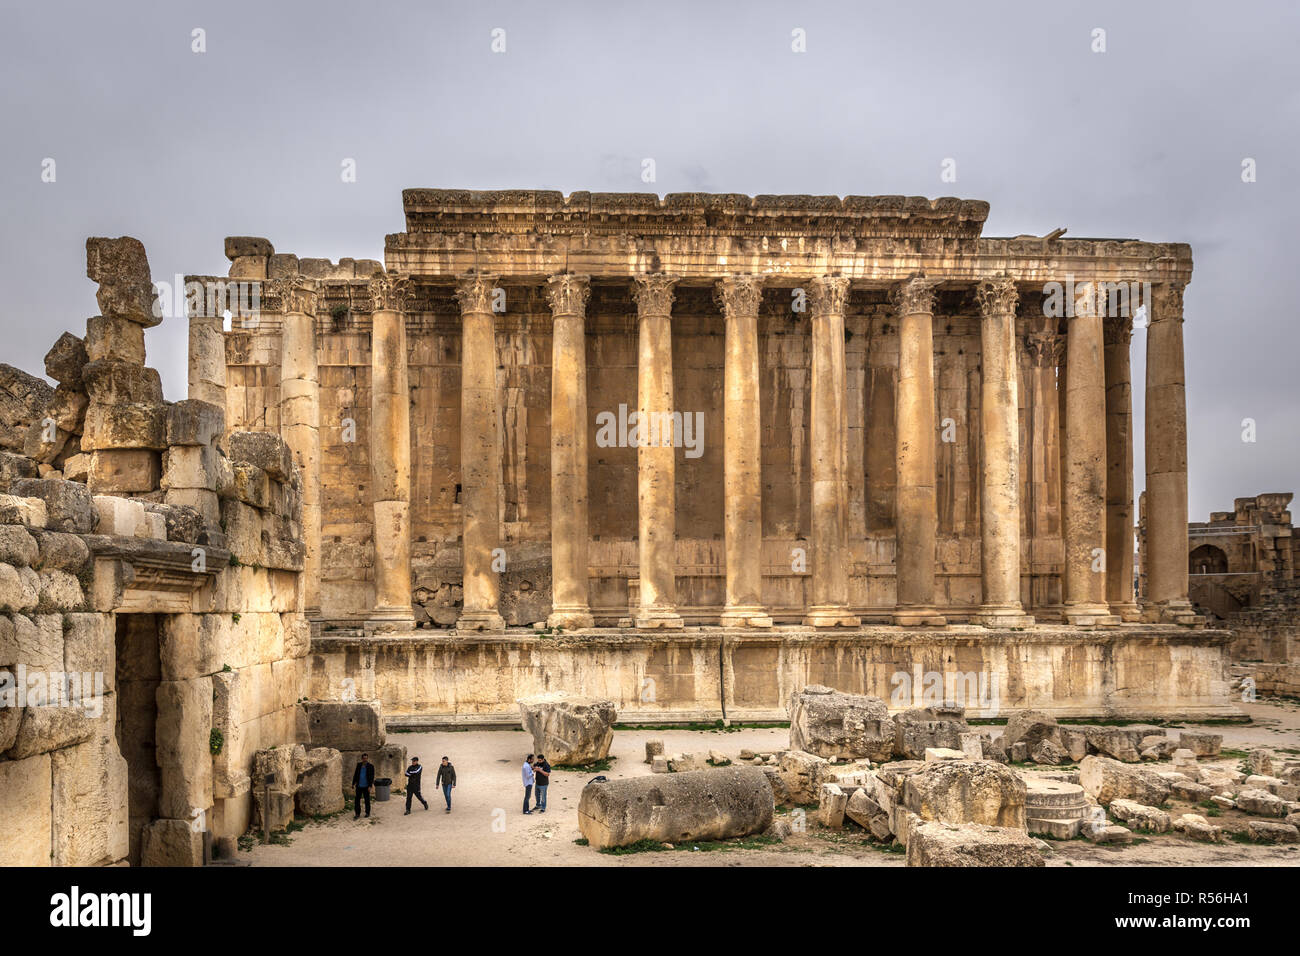 Balbek, Liban - 13 février 2018 - Les touristes et les habitants dans les ruines de Balbek, site du patrimoine mondial de l'Unesco au Liban Banque D'Images